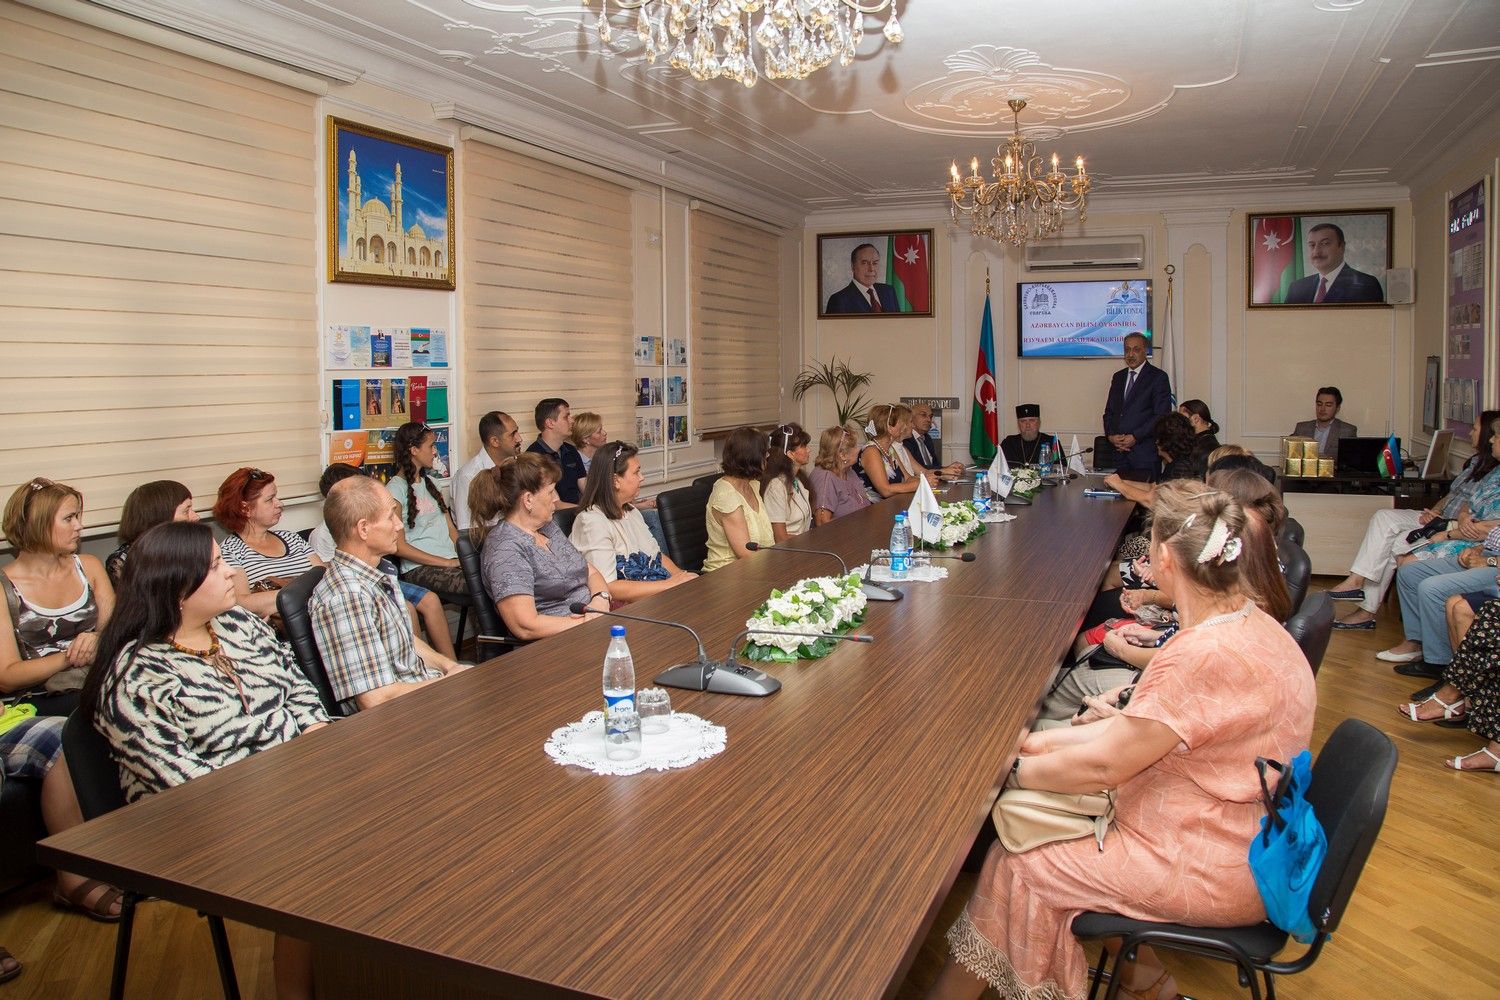 Высокопреосвященный архиепископ Александр принял участие в торжественном вручении сертификатов об успешном окончании курсов азербайджанского языка.